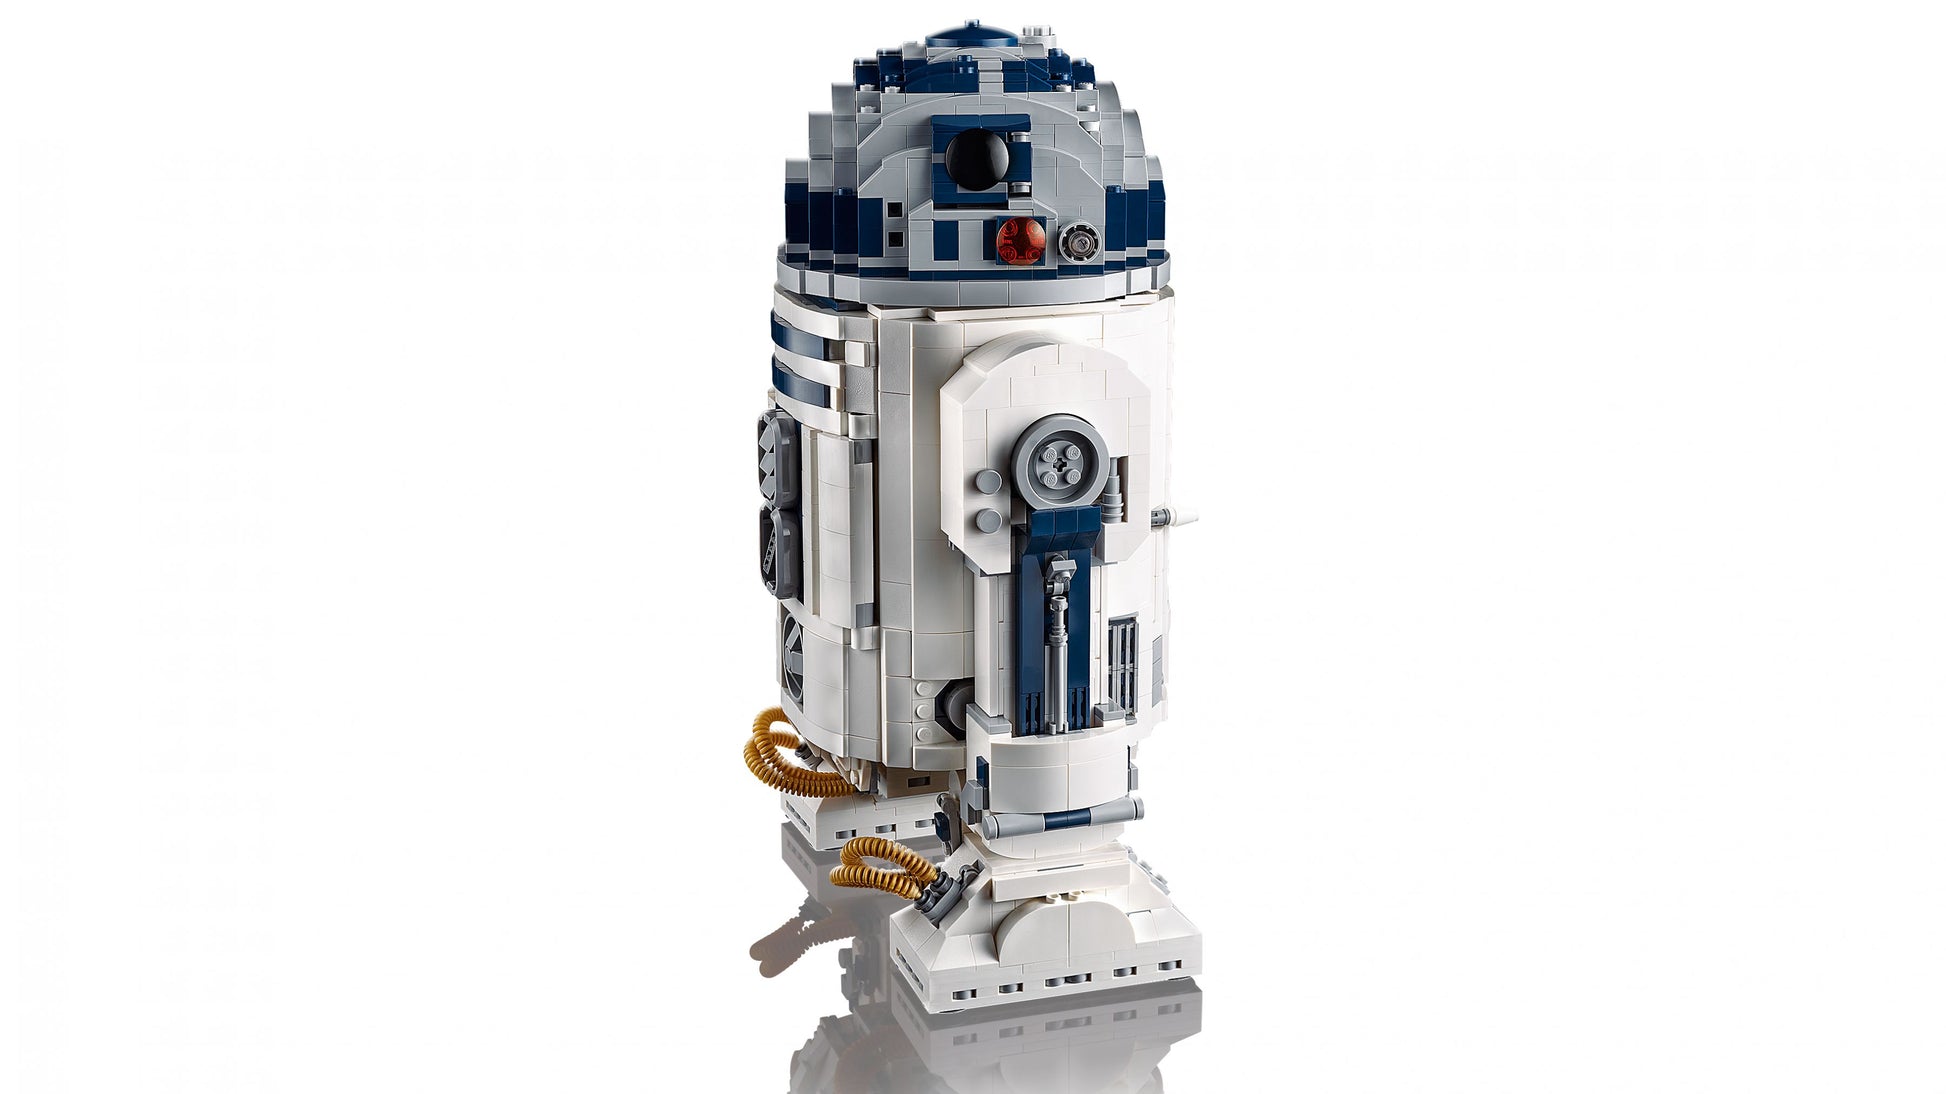 LEGO 75308 Star Wars R2D2 der legendäre Droide ab 18